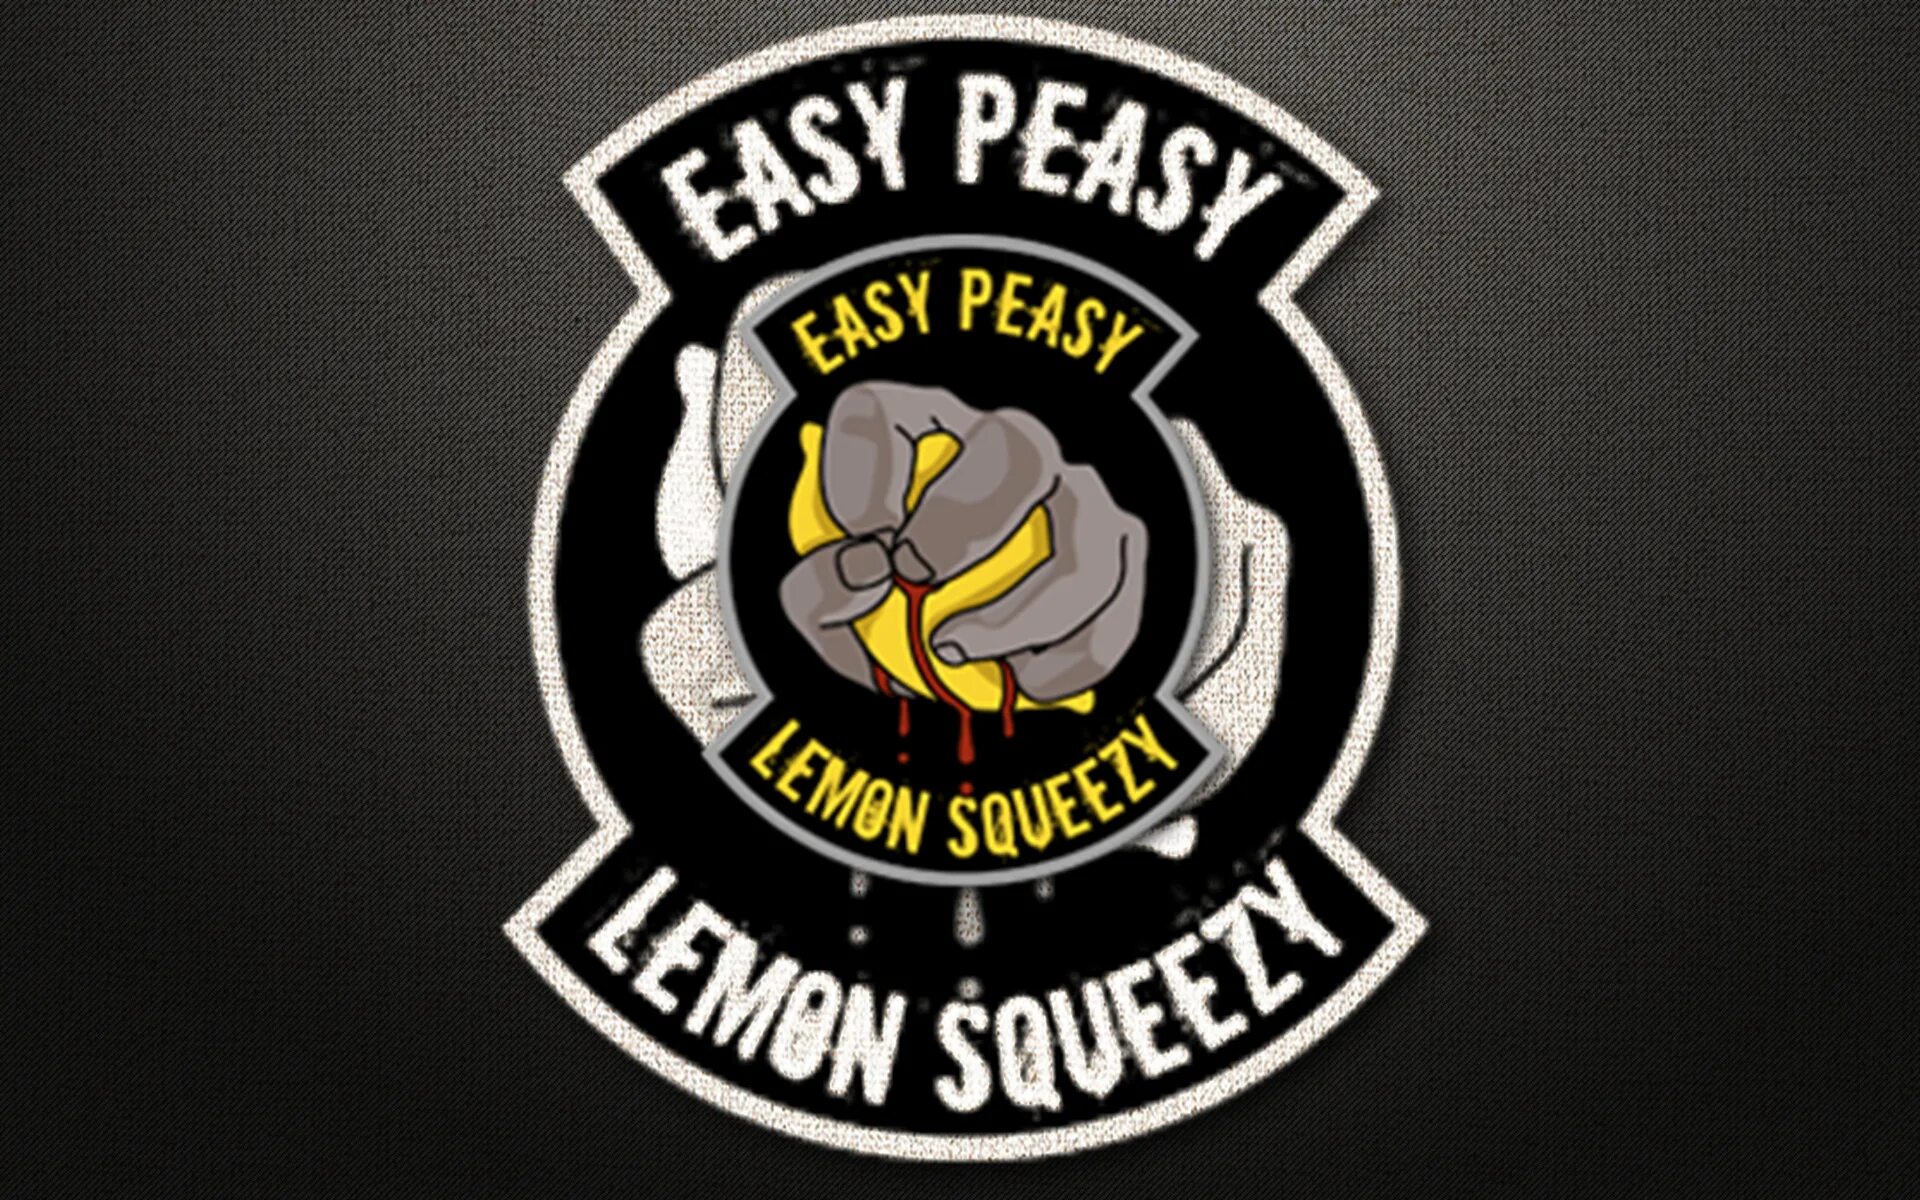 Easy Peasy. ИЗИ пизи Лемон. Easy Peasy Lemon Squeezy CS go. Стикер ИЗИ пизи. Easy peasy lemon